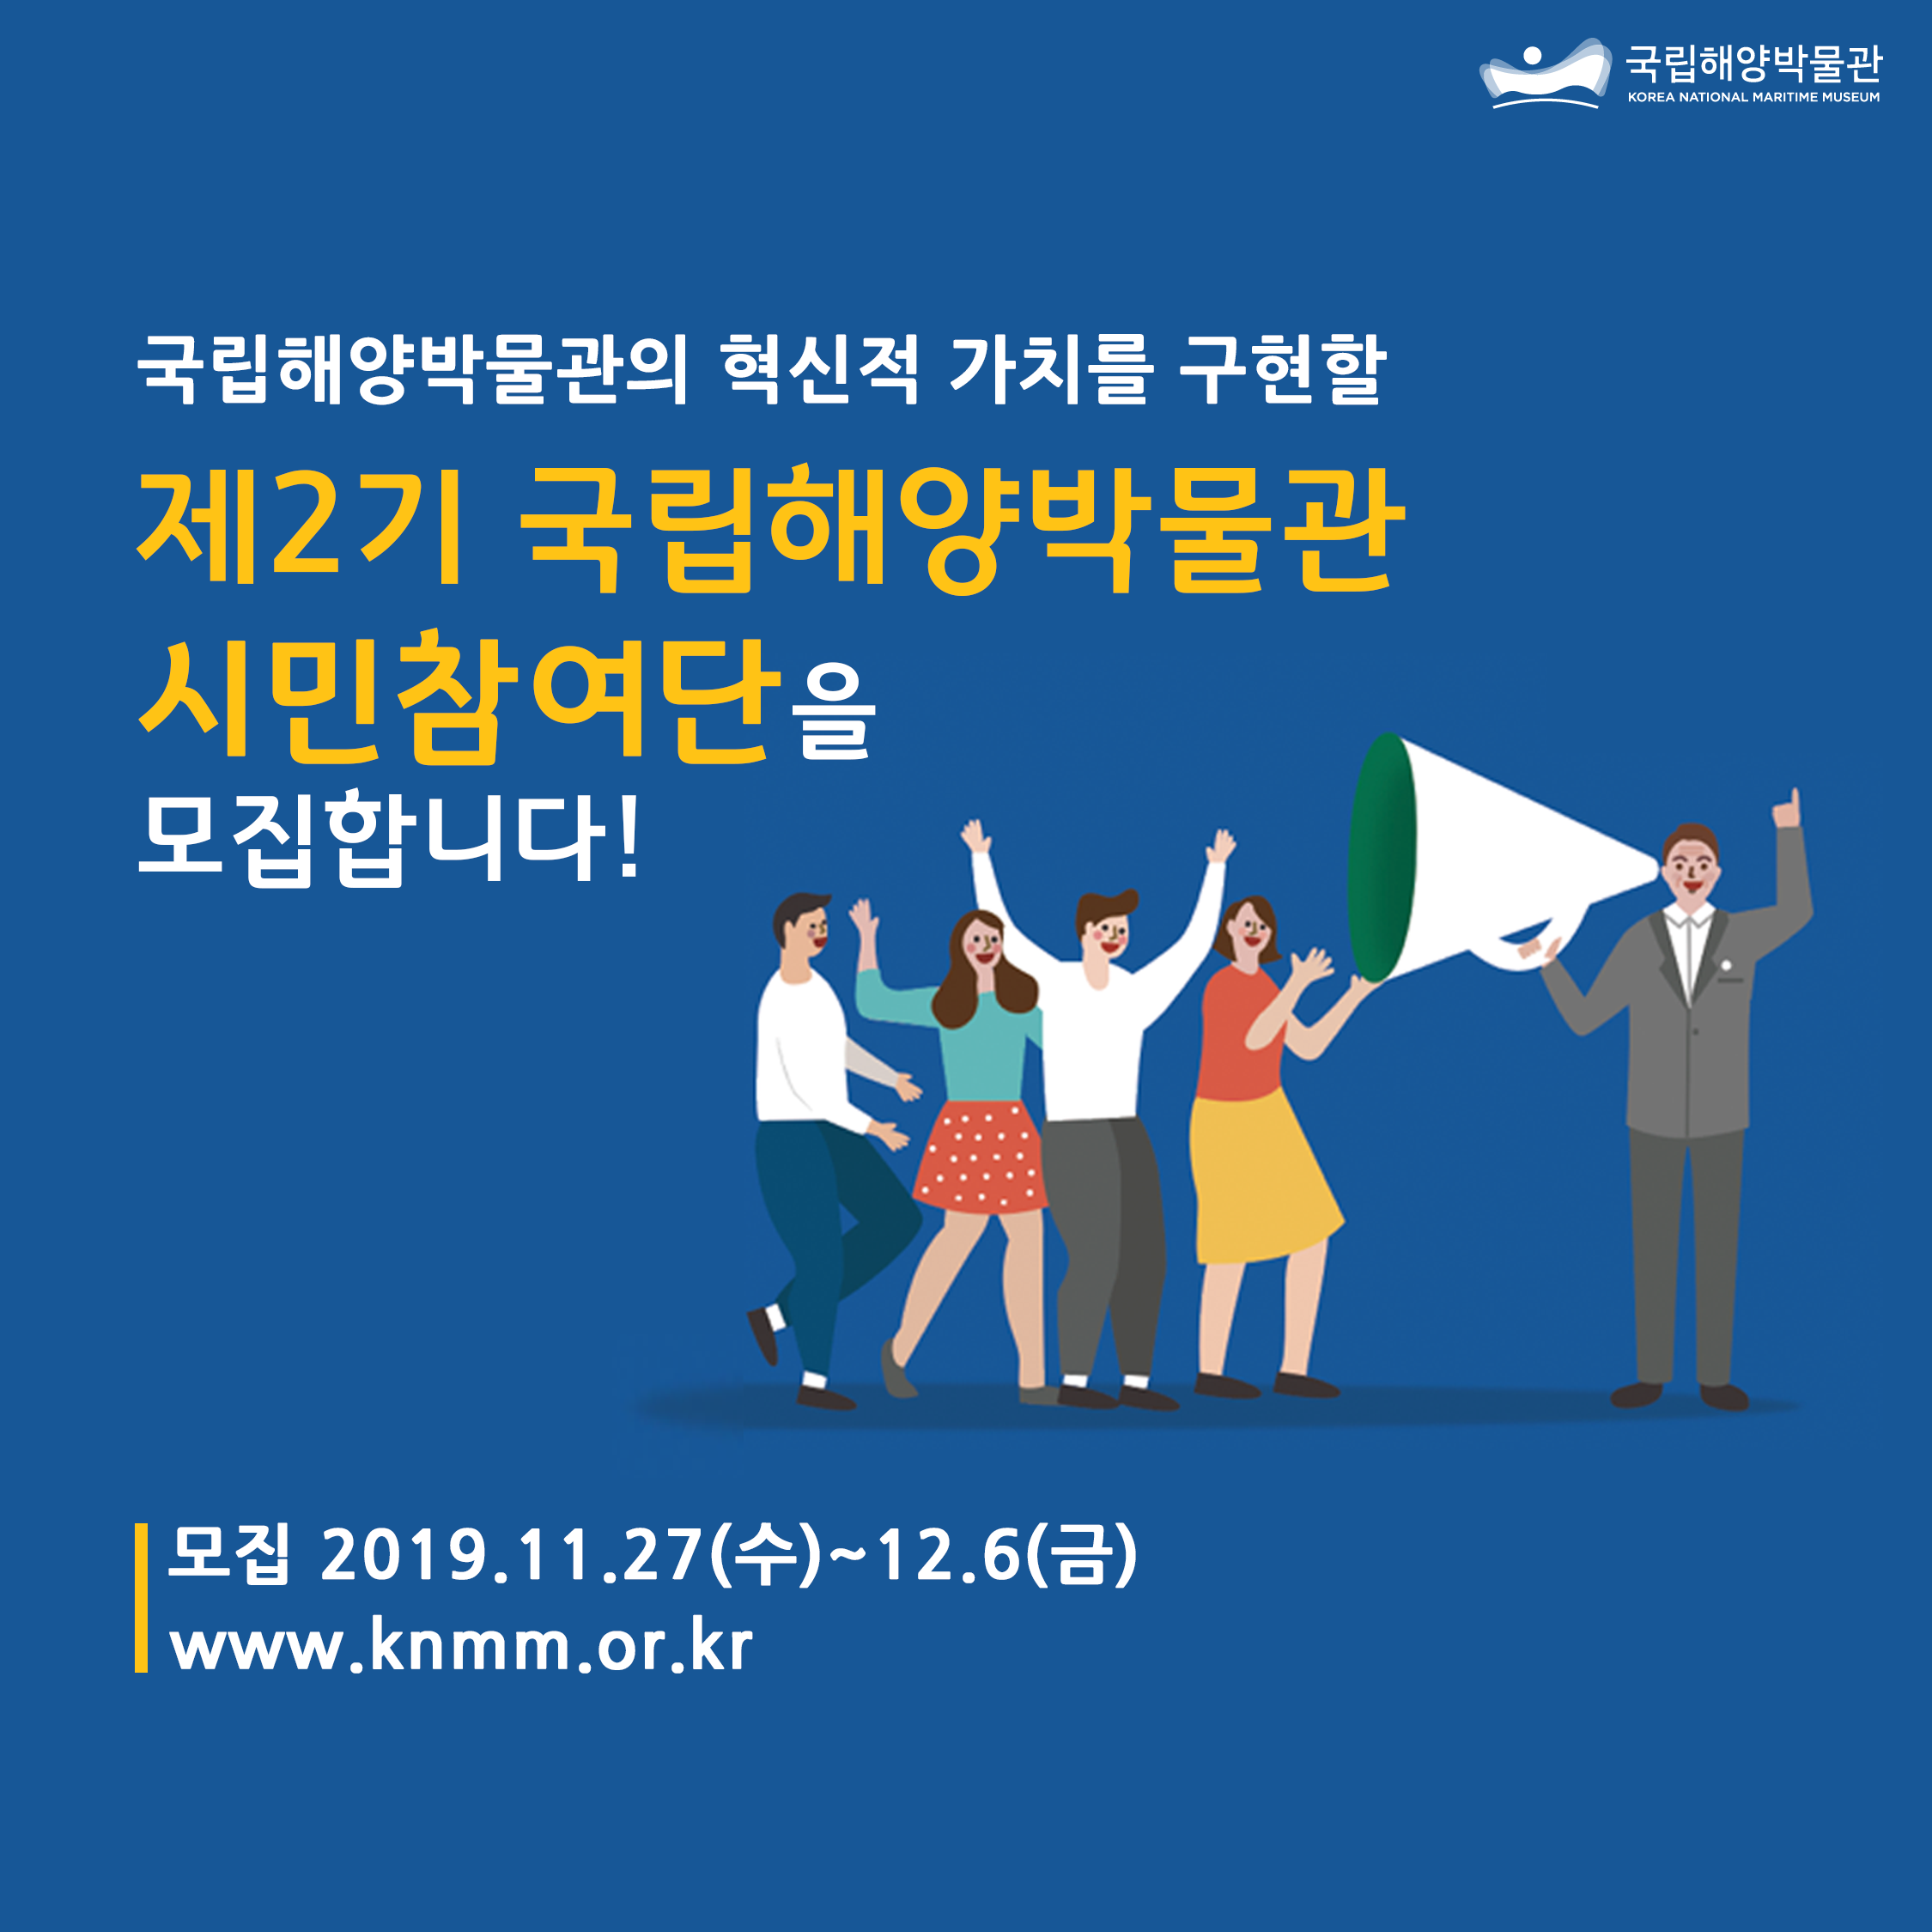 [카드뉴스] 제2기 국립해양박물관 시민참여단 모집!